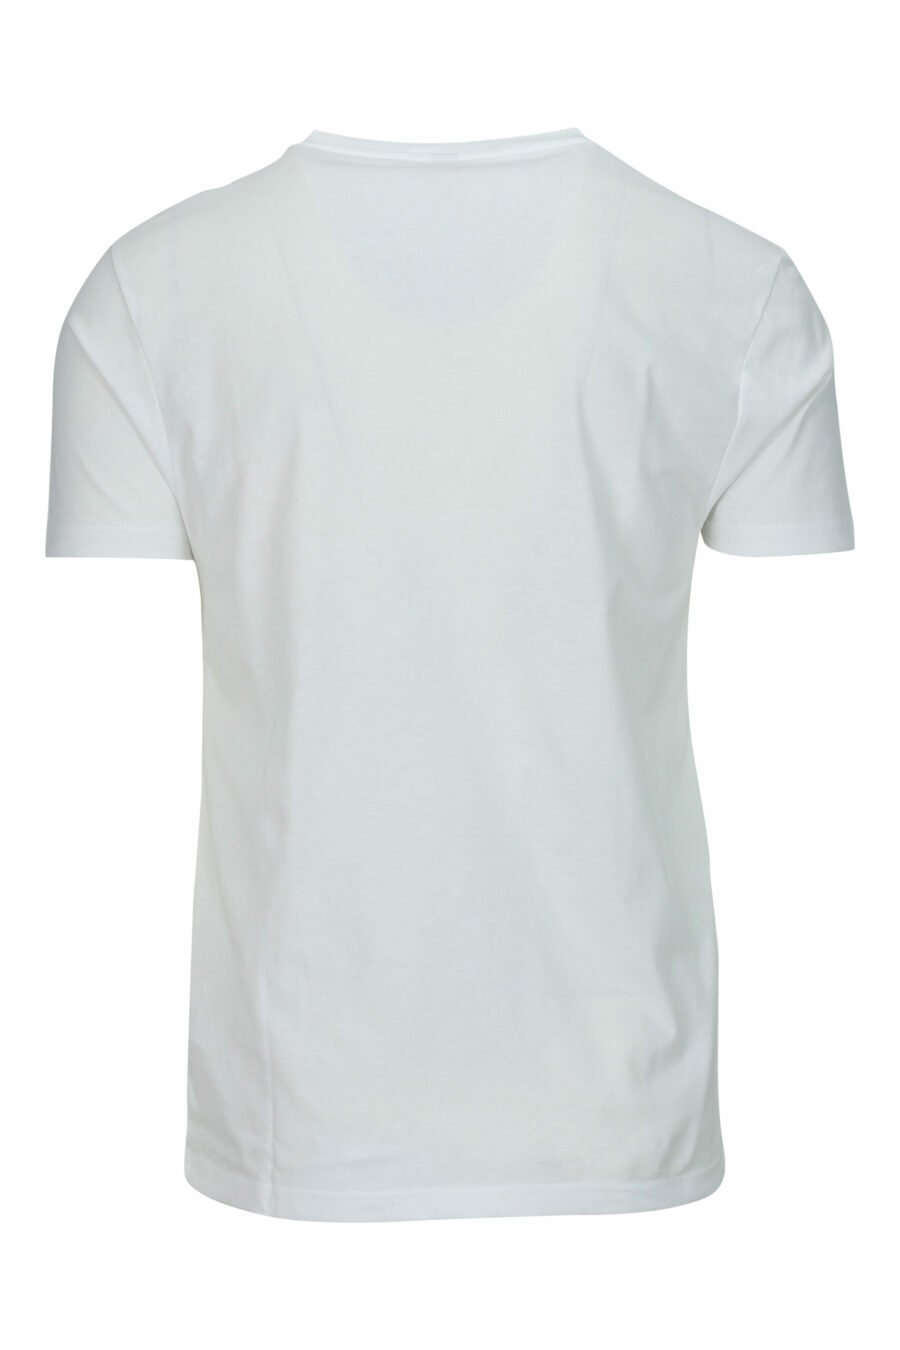 Camiseta blanca con logo negro con detalle rojo en cinta en hombros - 667113604213 1 scaled